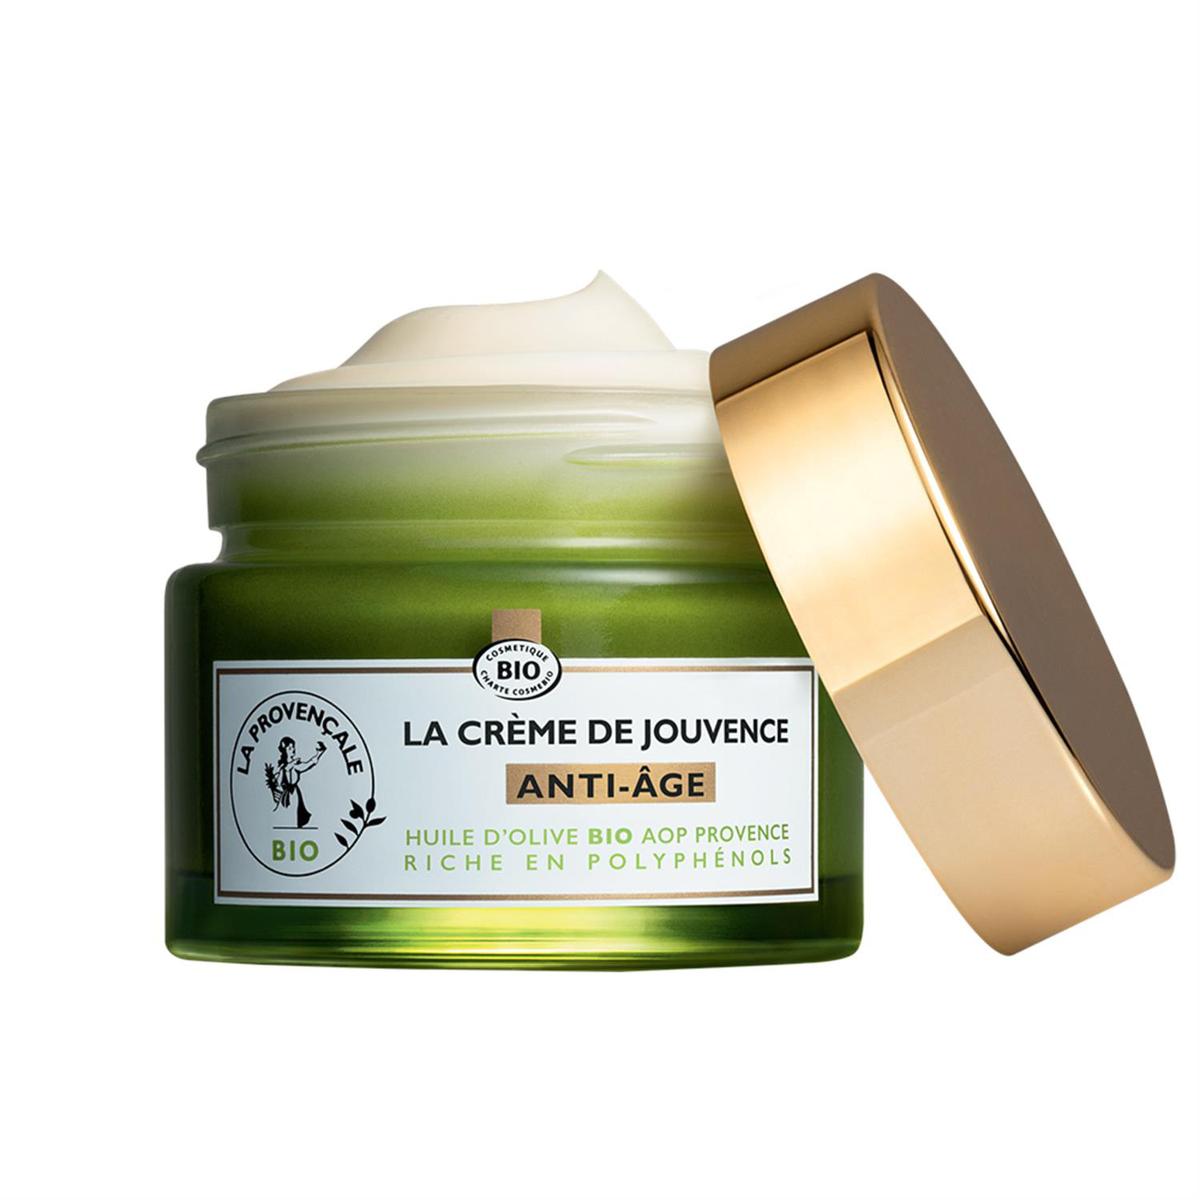 La Provencale BIO Crème de jouvence anti-âge à l'huile d'olive Bio AOC  Provence